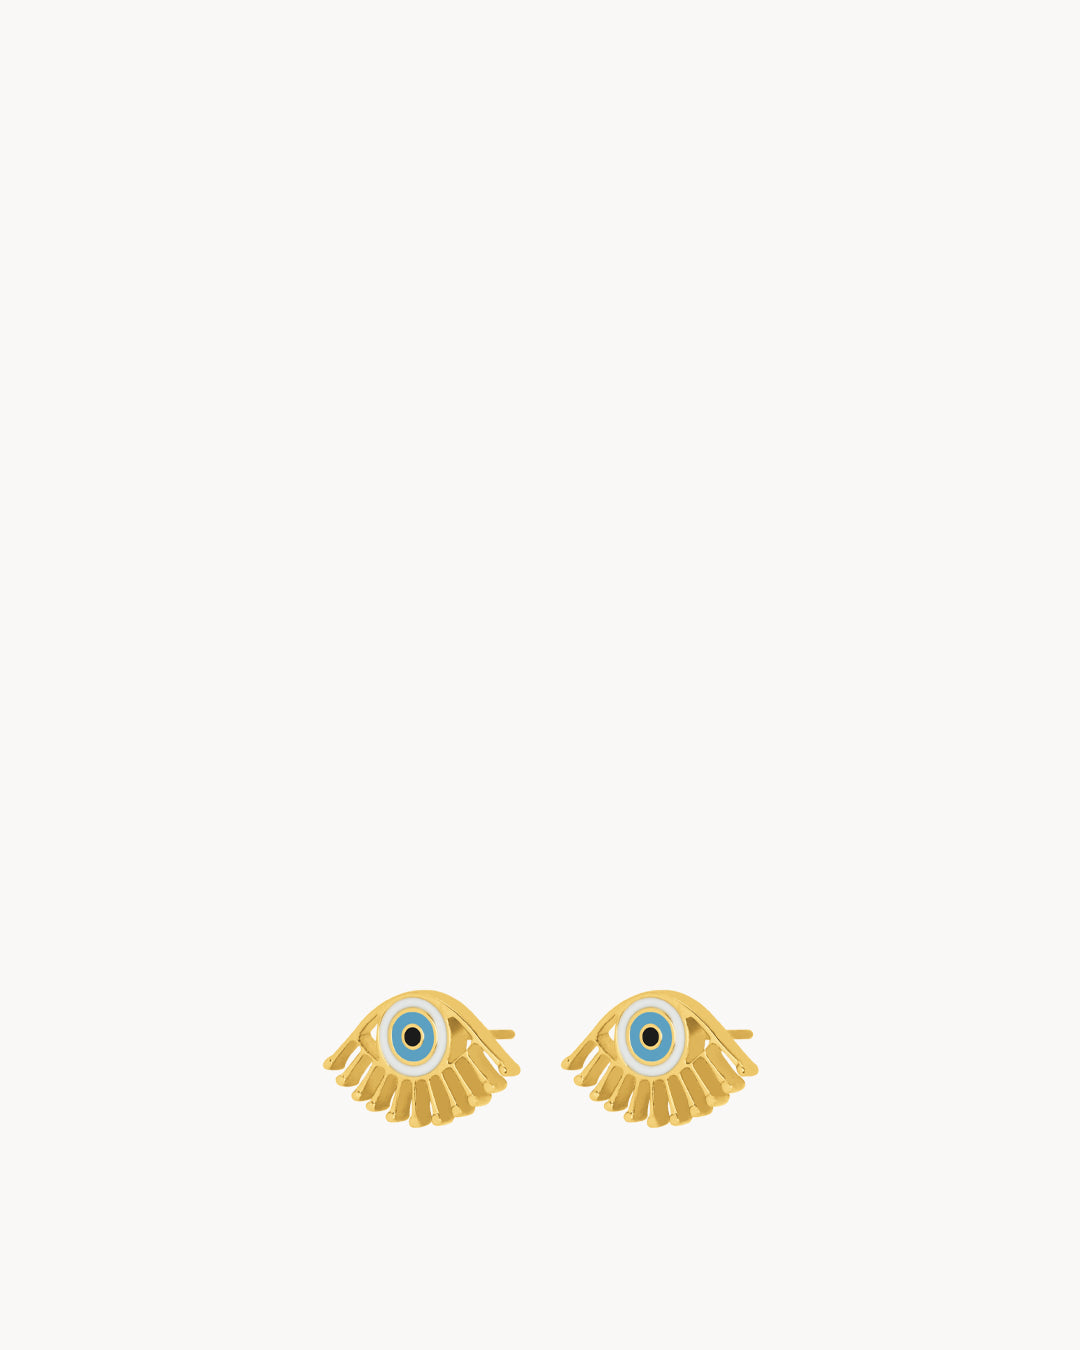 Luzzu Eye Stud Earrings, Gold